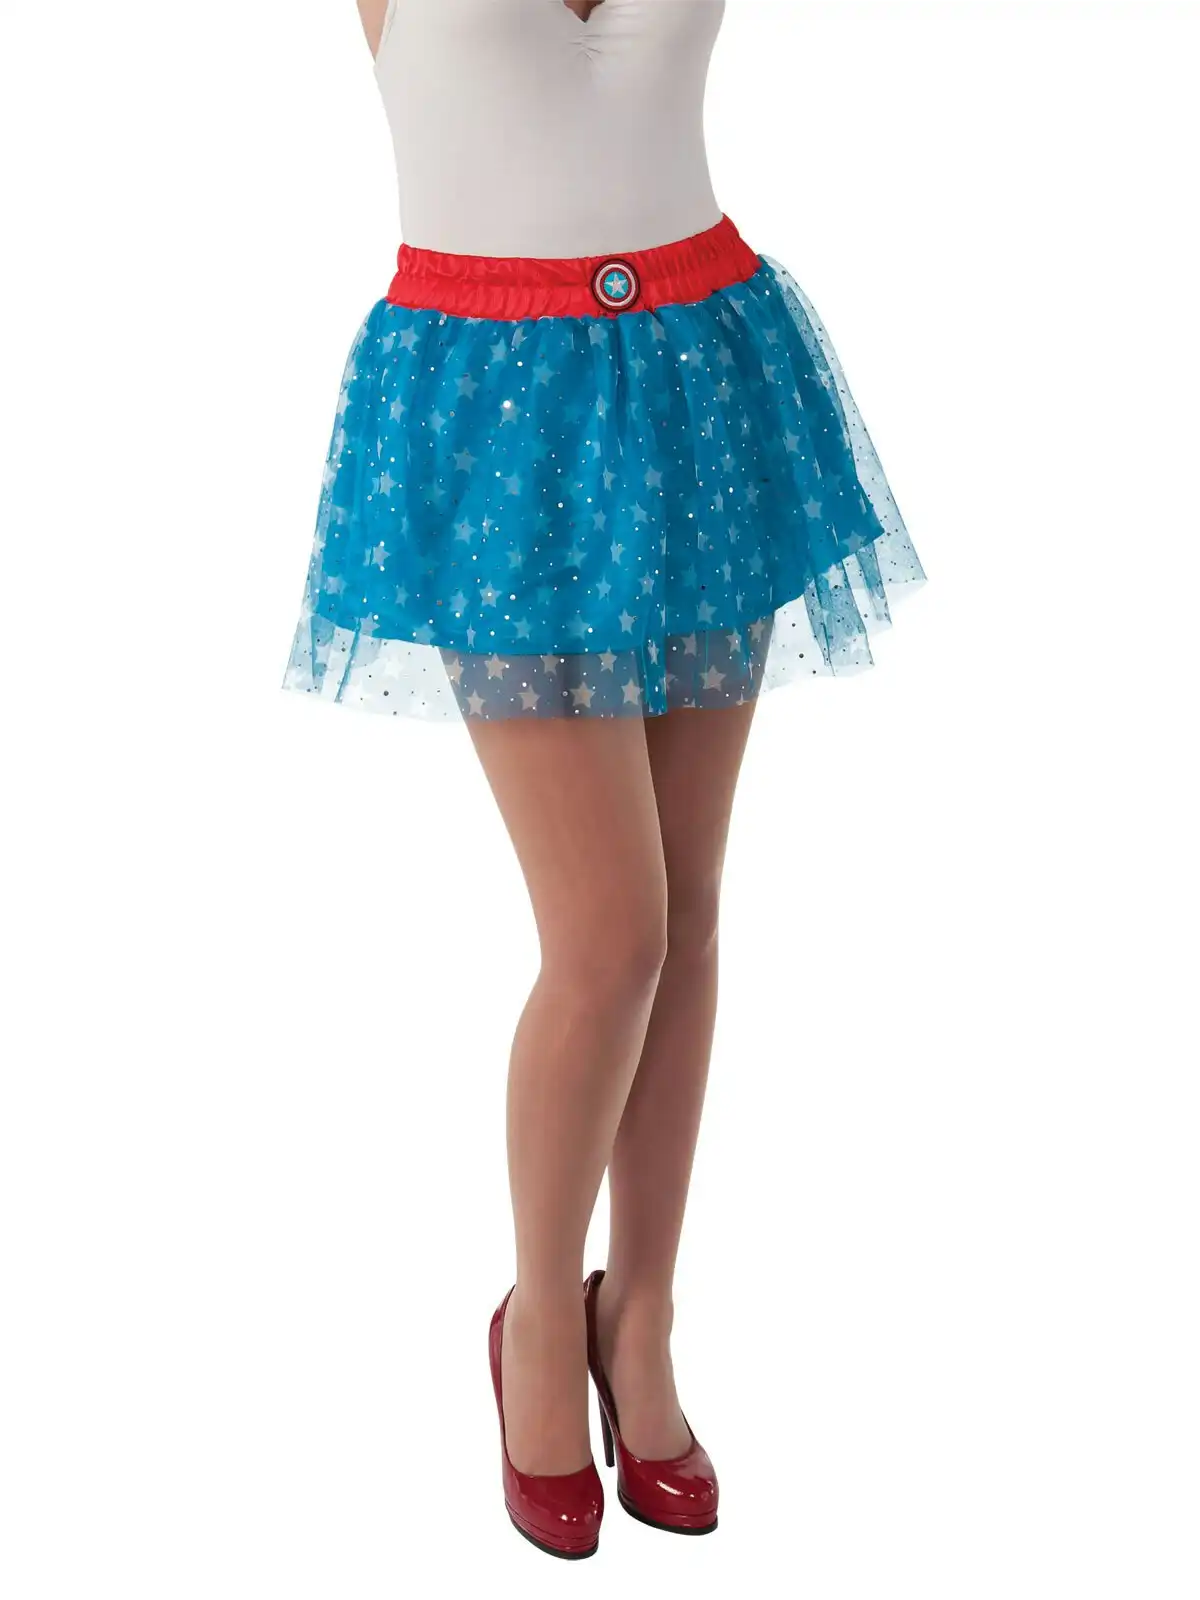 DC Comic Marvel American Dream Avengers Skirt Women Dress Up Costume Size STD